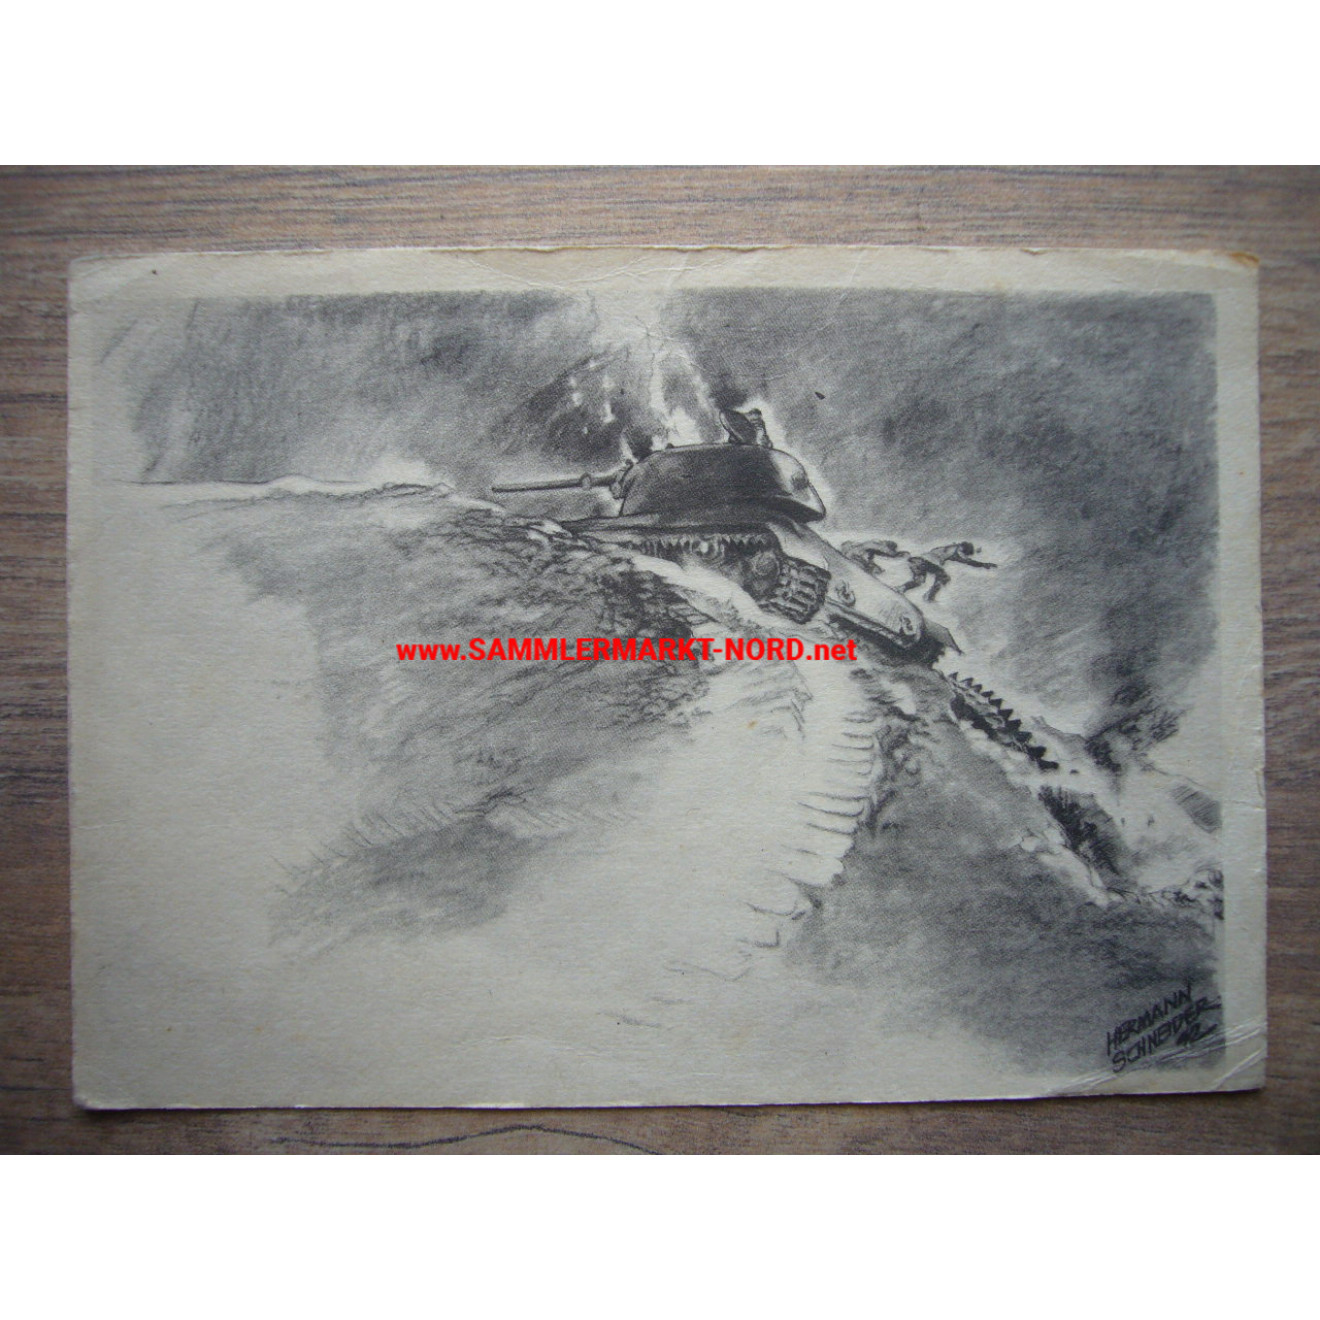 Sowjetpanzer Besatzung bootet aus - Postkarte